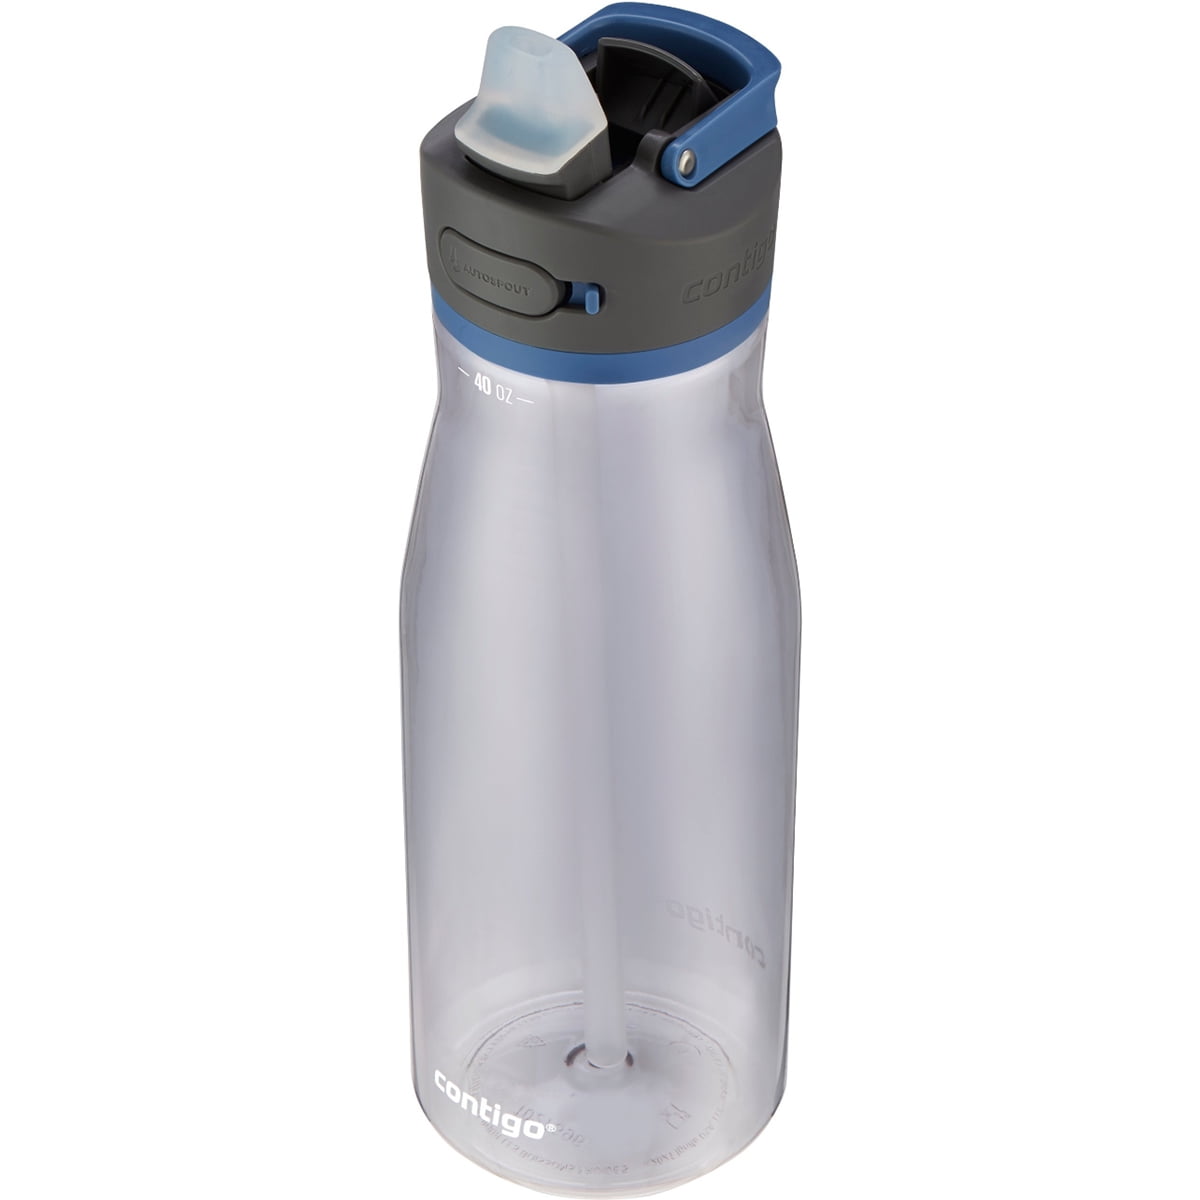 Contigo ashland autospout water bottle reviews in Fitness